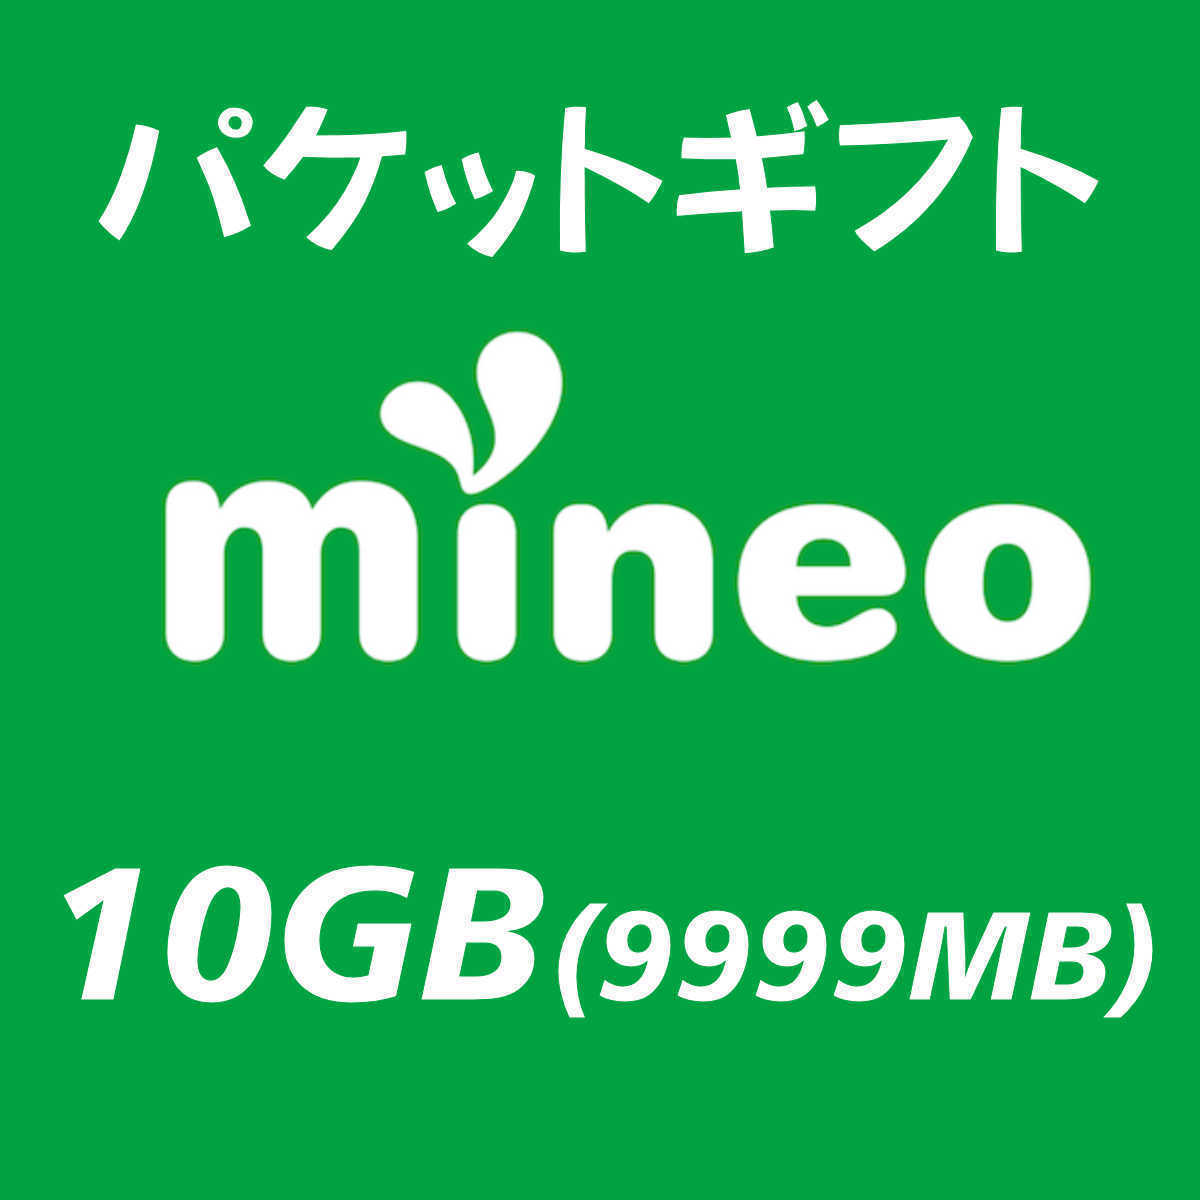 mineo パケットギフト 10GB（9999MB）_画像1